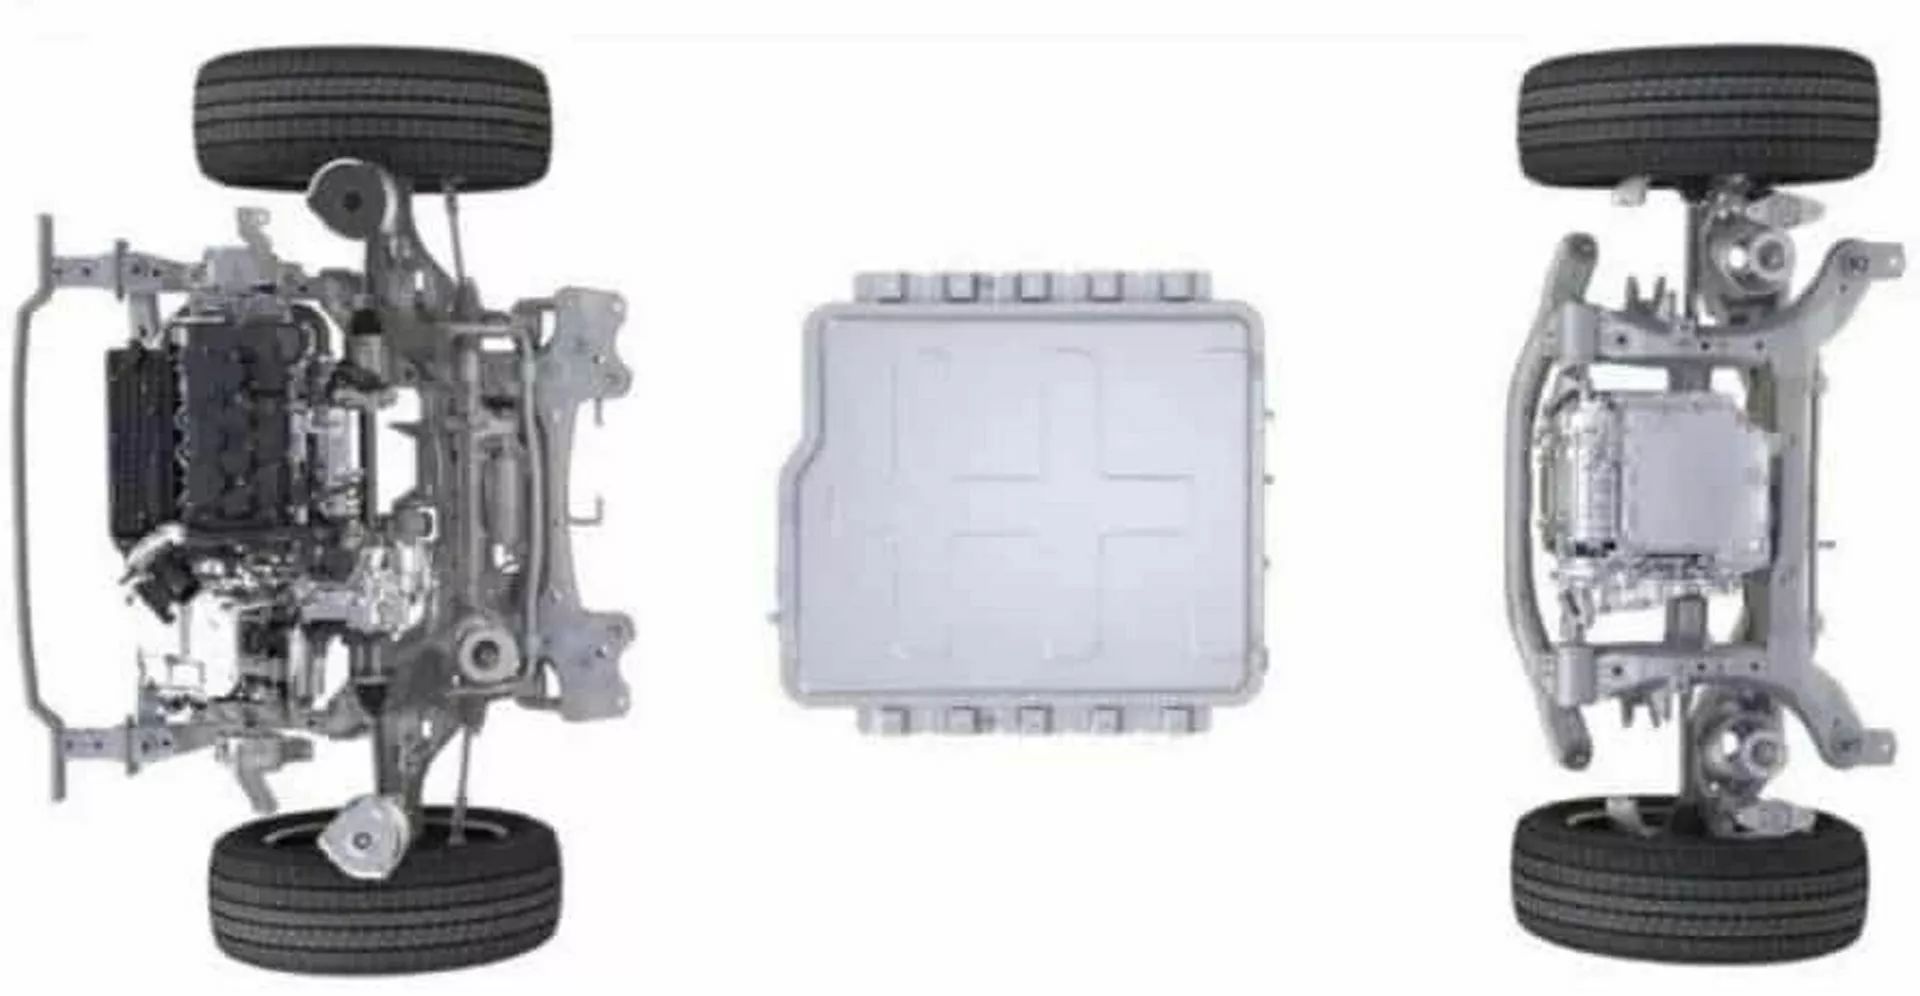 هافال شيانغ لونغ هي SUV صينية جديدة كلياً بتصميم عضلي ومحركات هايبرد 5